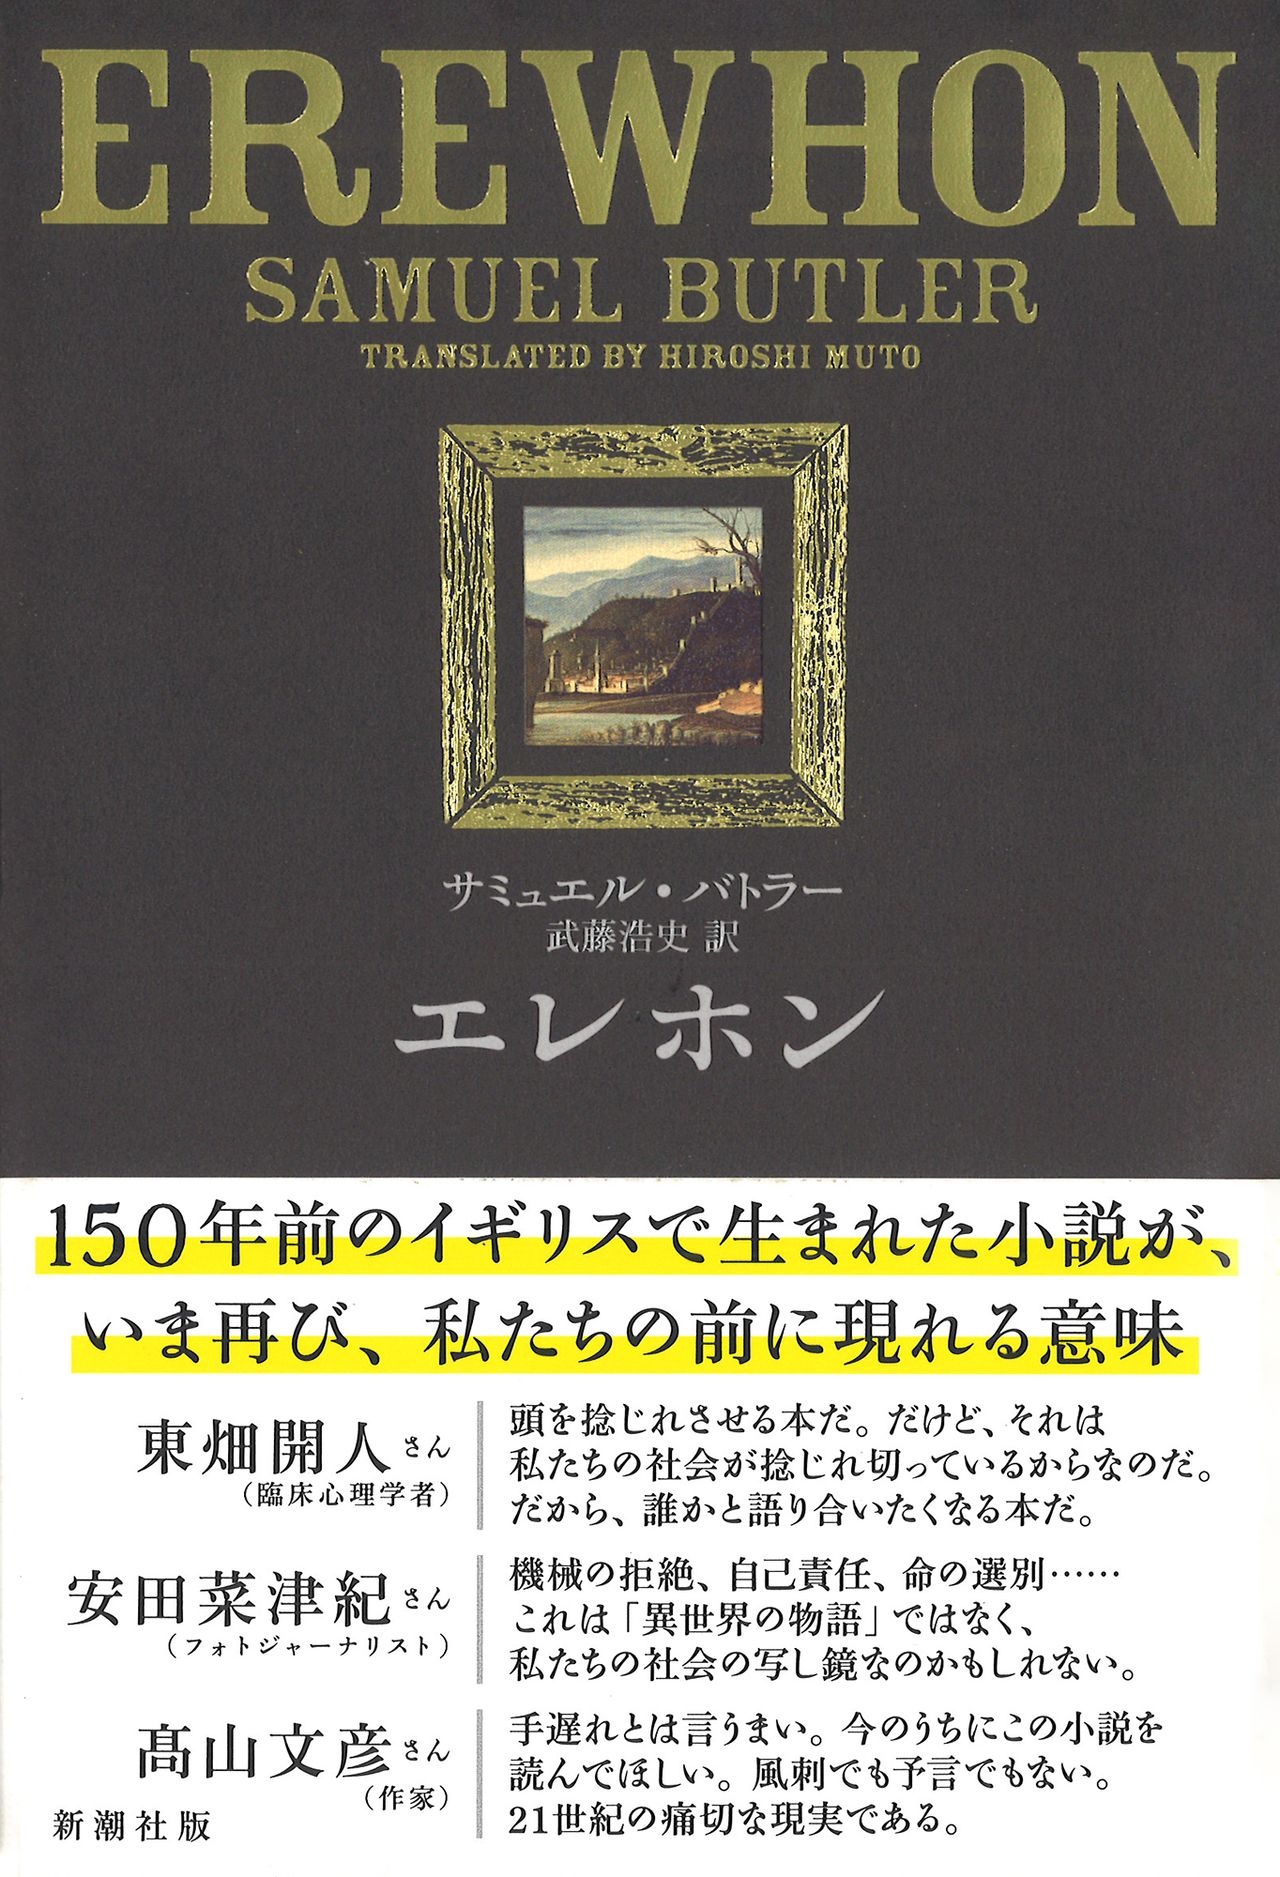 Edición japonesa de Erewhon (Shinchōsha)